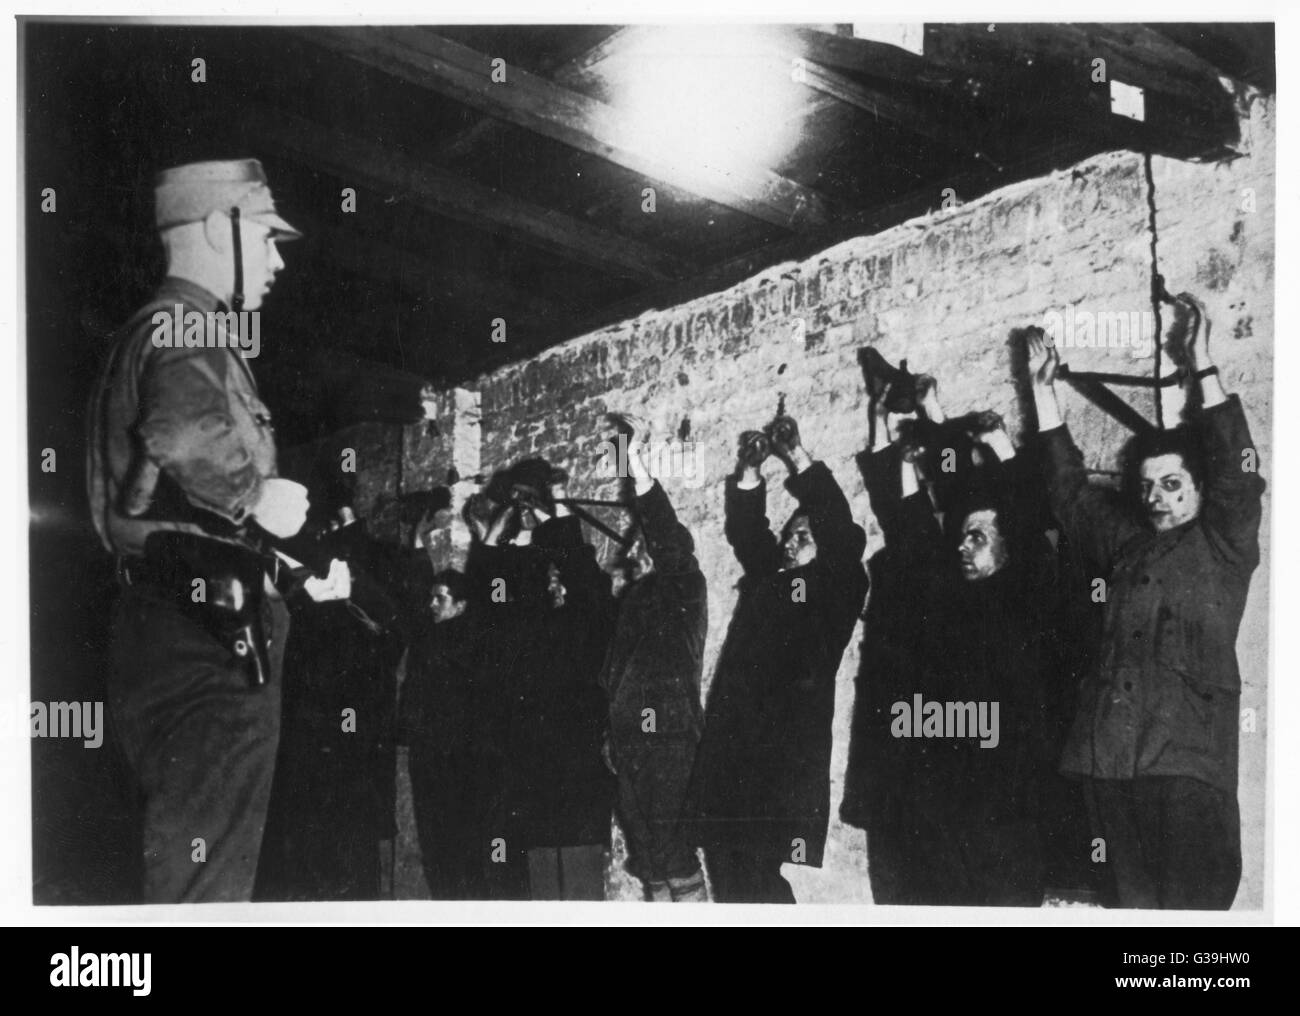 Politische Gefangene mit erhobenen Armen sind gegen eine Wand mit vorgehaltener Waffe gefüttert und gehalten von der SA.       Datum: Januar 1933 Stockfoto